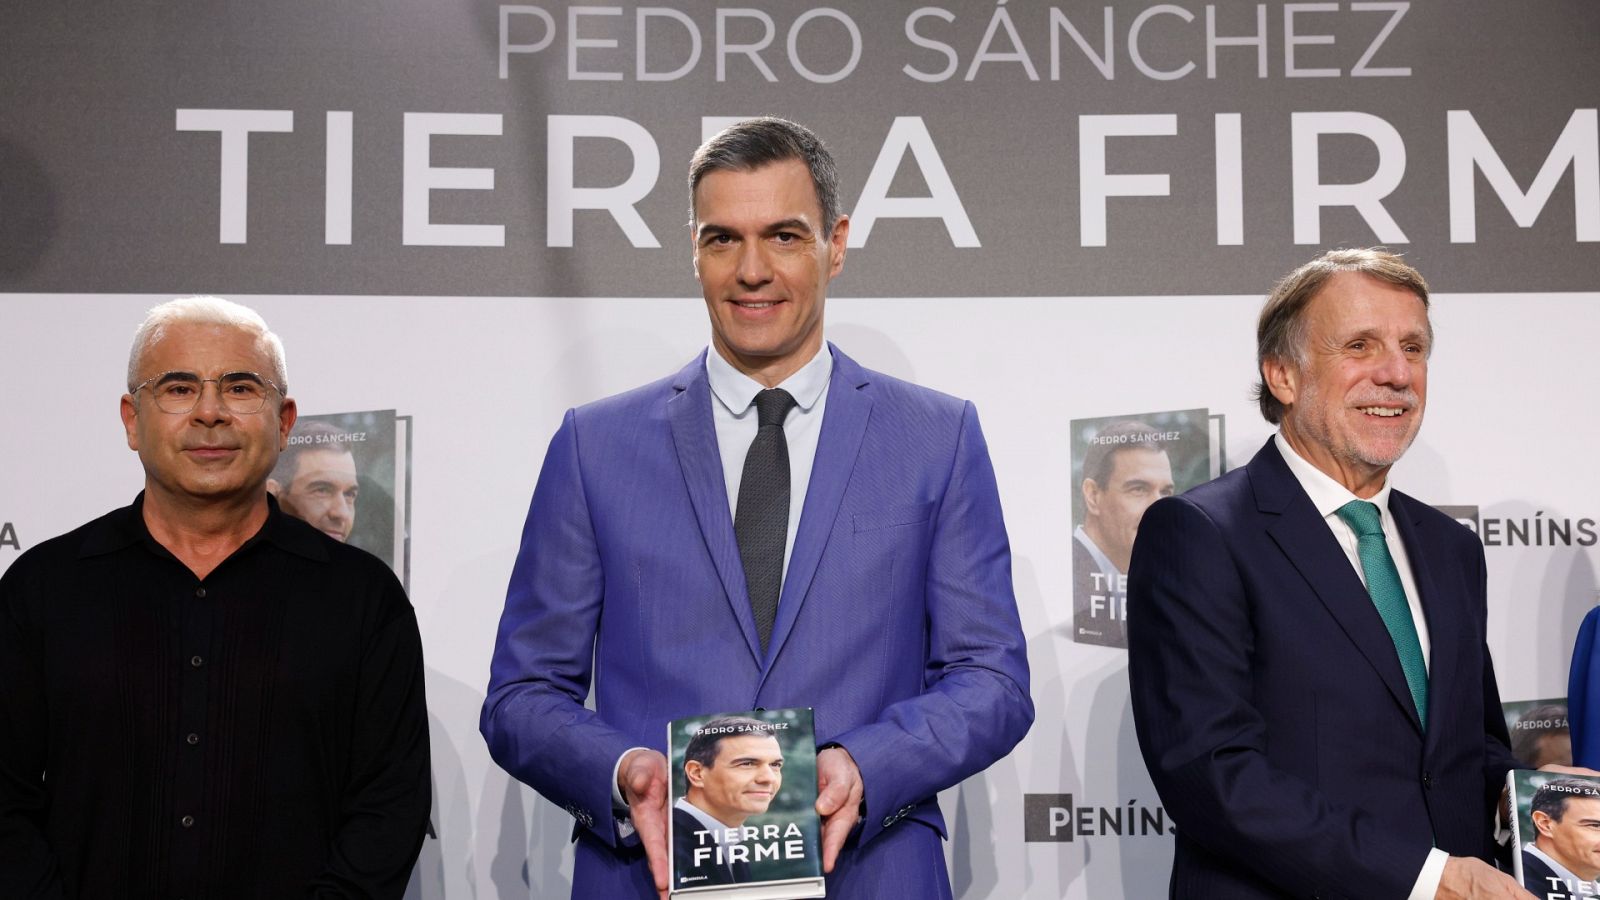 Pedro Sánchez ha presentado este lunes su segundo libro, "Tierra Firme", donde repasa la anterior legislatura.